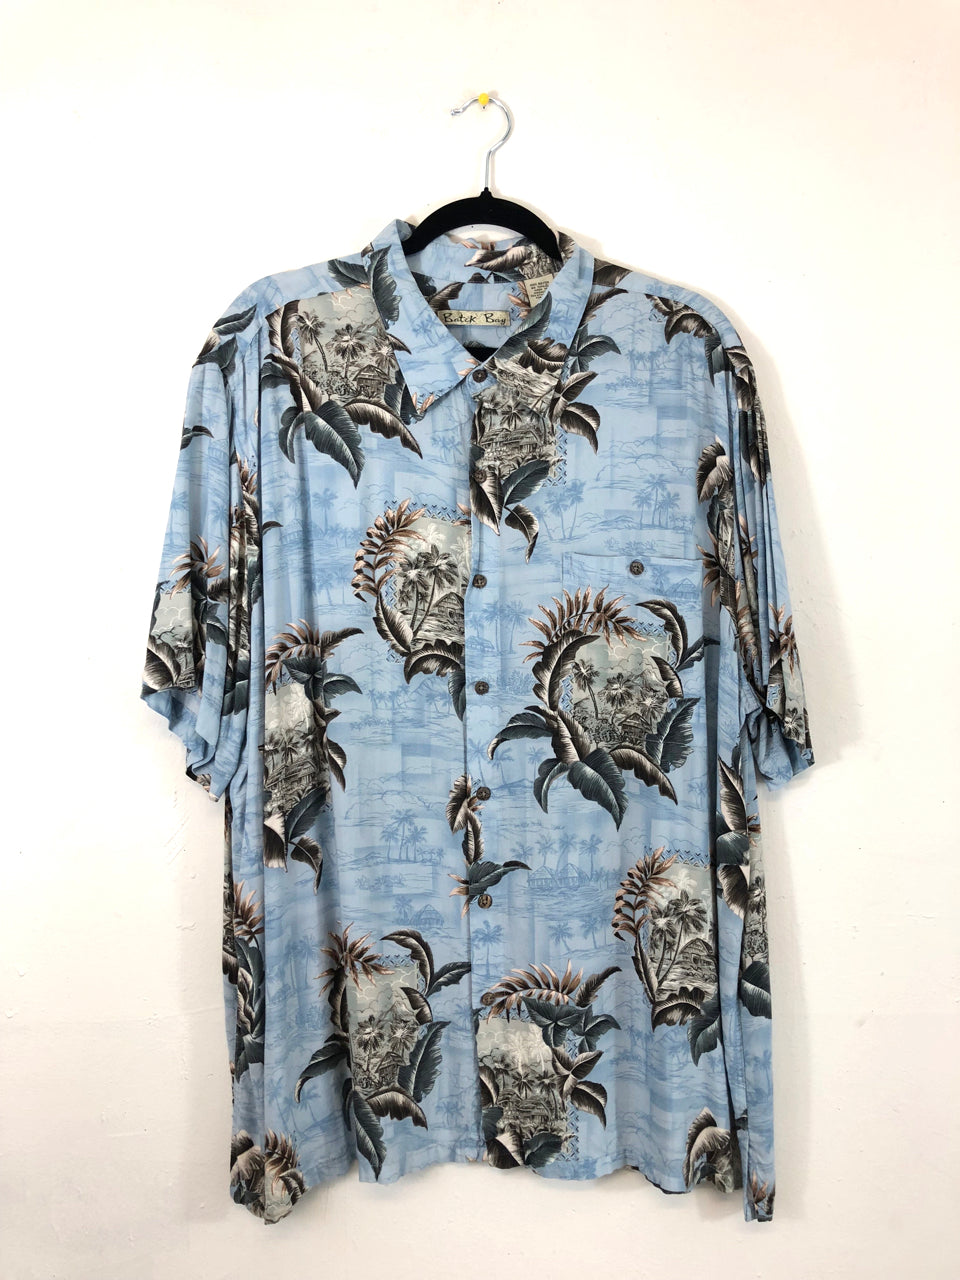 Batik Bay Hawaiian Shirt